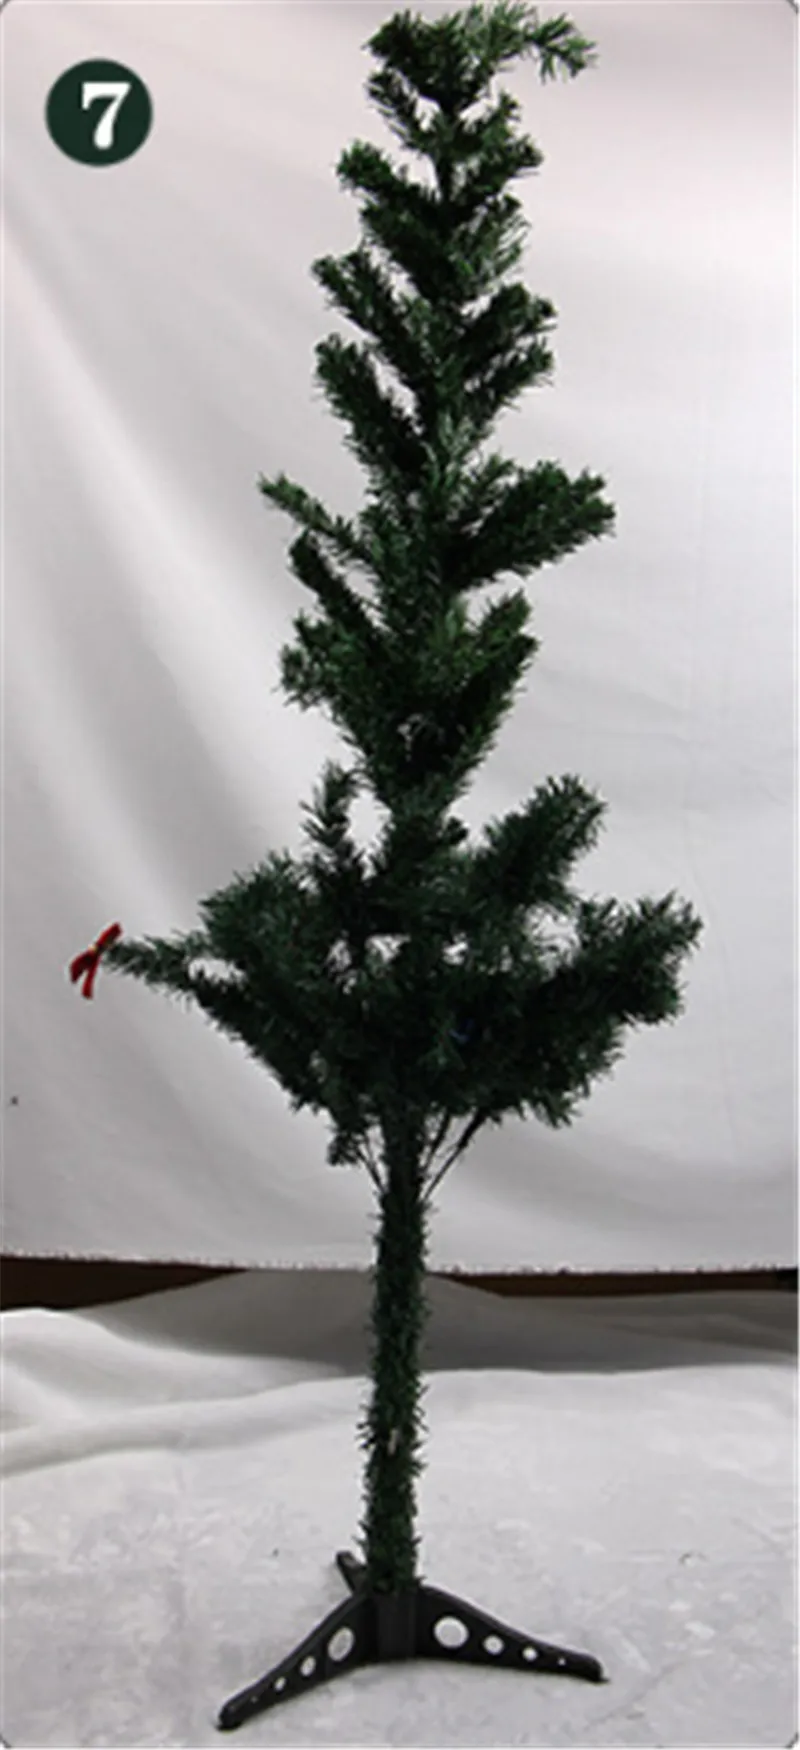 1 шт. 60 см новогодняя елка моделирование декоративное пленка с изображением дерева зеленое растение новогодний Рождественский подарок домашний офис торговый центр декоративное дерево для сада